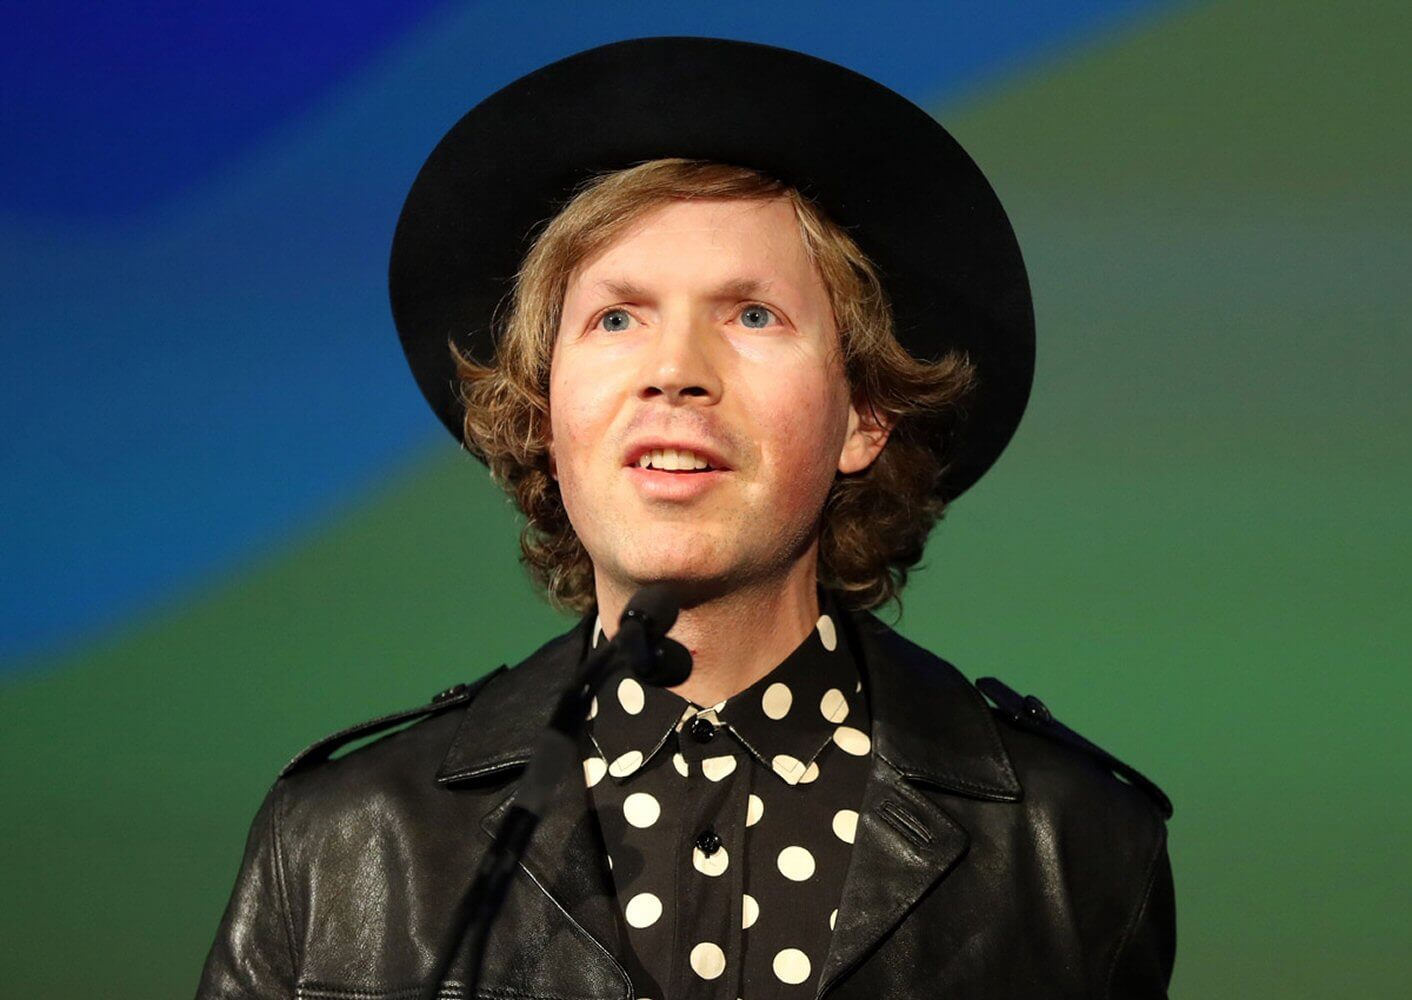 Beck zapowiada nową płytę (posłuchaj singla "Dear Life")